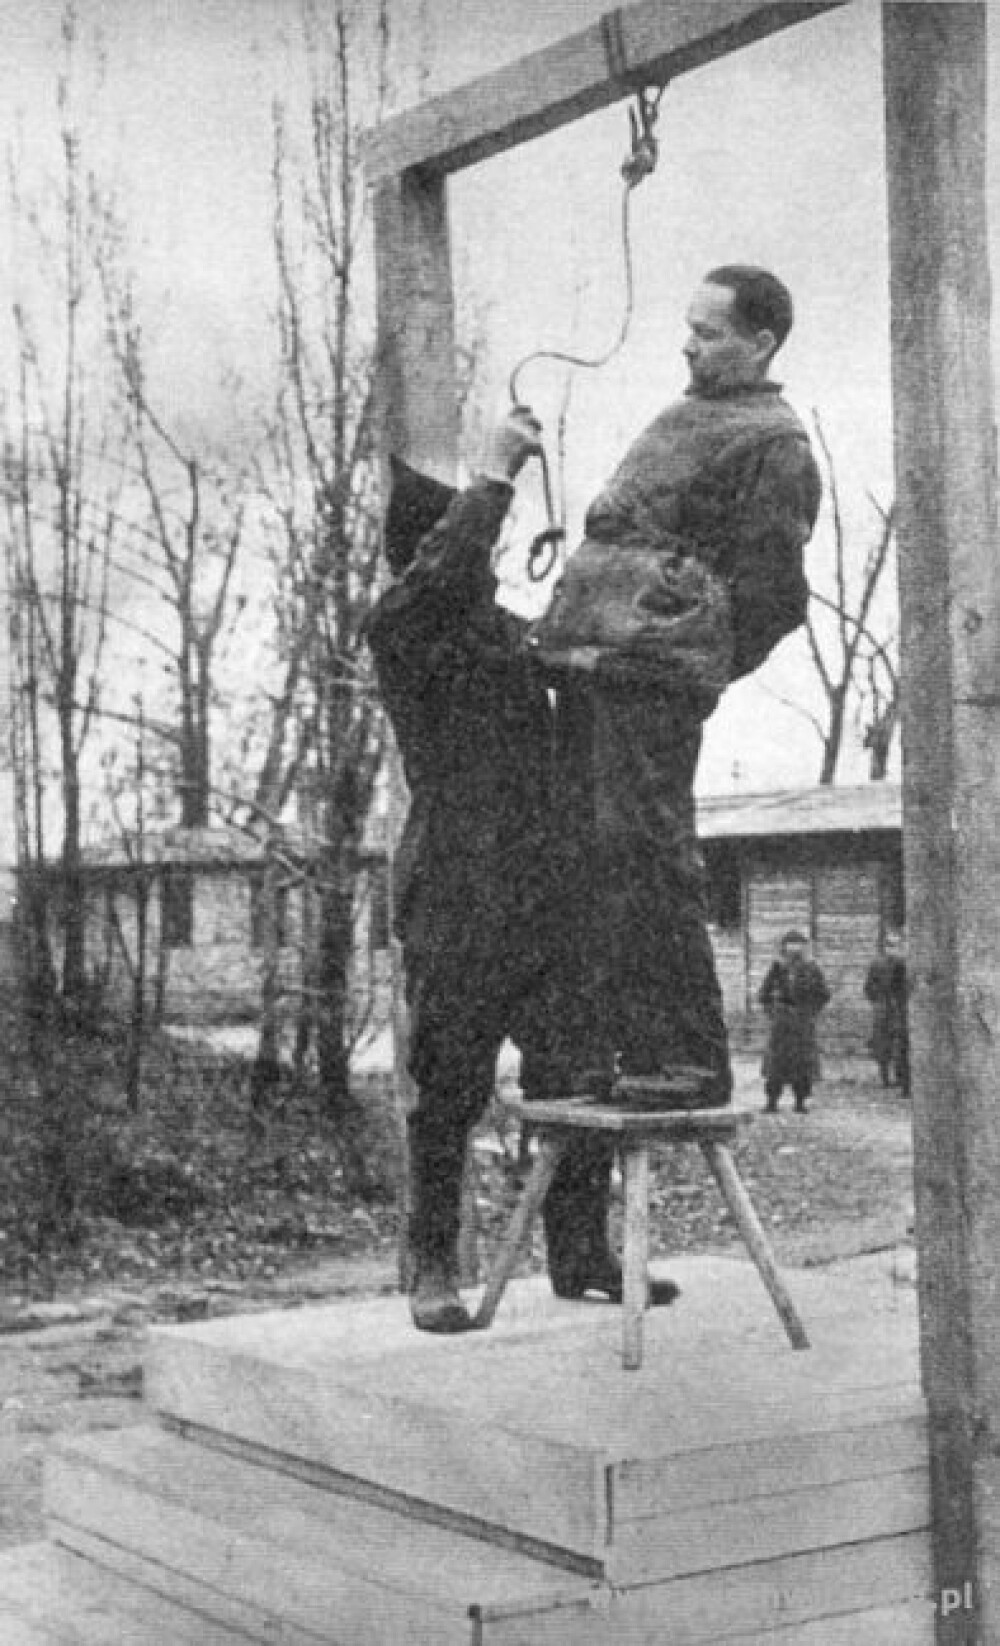 <b>UTSATT:</b> Auschwitz-Birkenau var omringet av en enorm, rasende folkemengde da Rudolf Höss etter planen skulle vært henrettet. Det var ikke mulig å transportere fangen til galgen, og hengingen ble utsatt. To dager senere ble dødsdommet fullbyrdet.